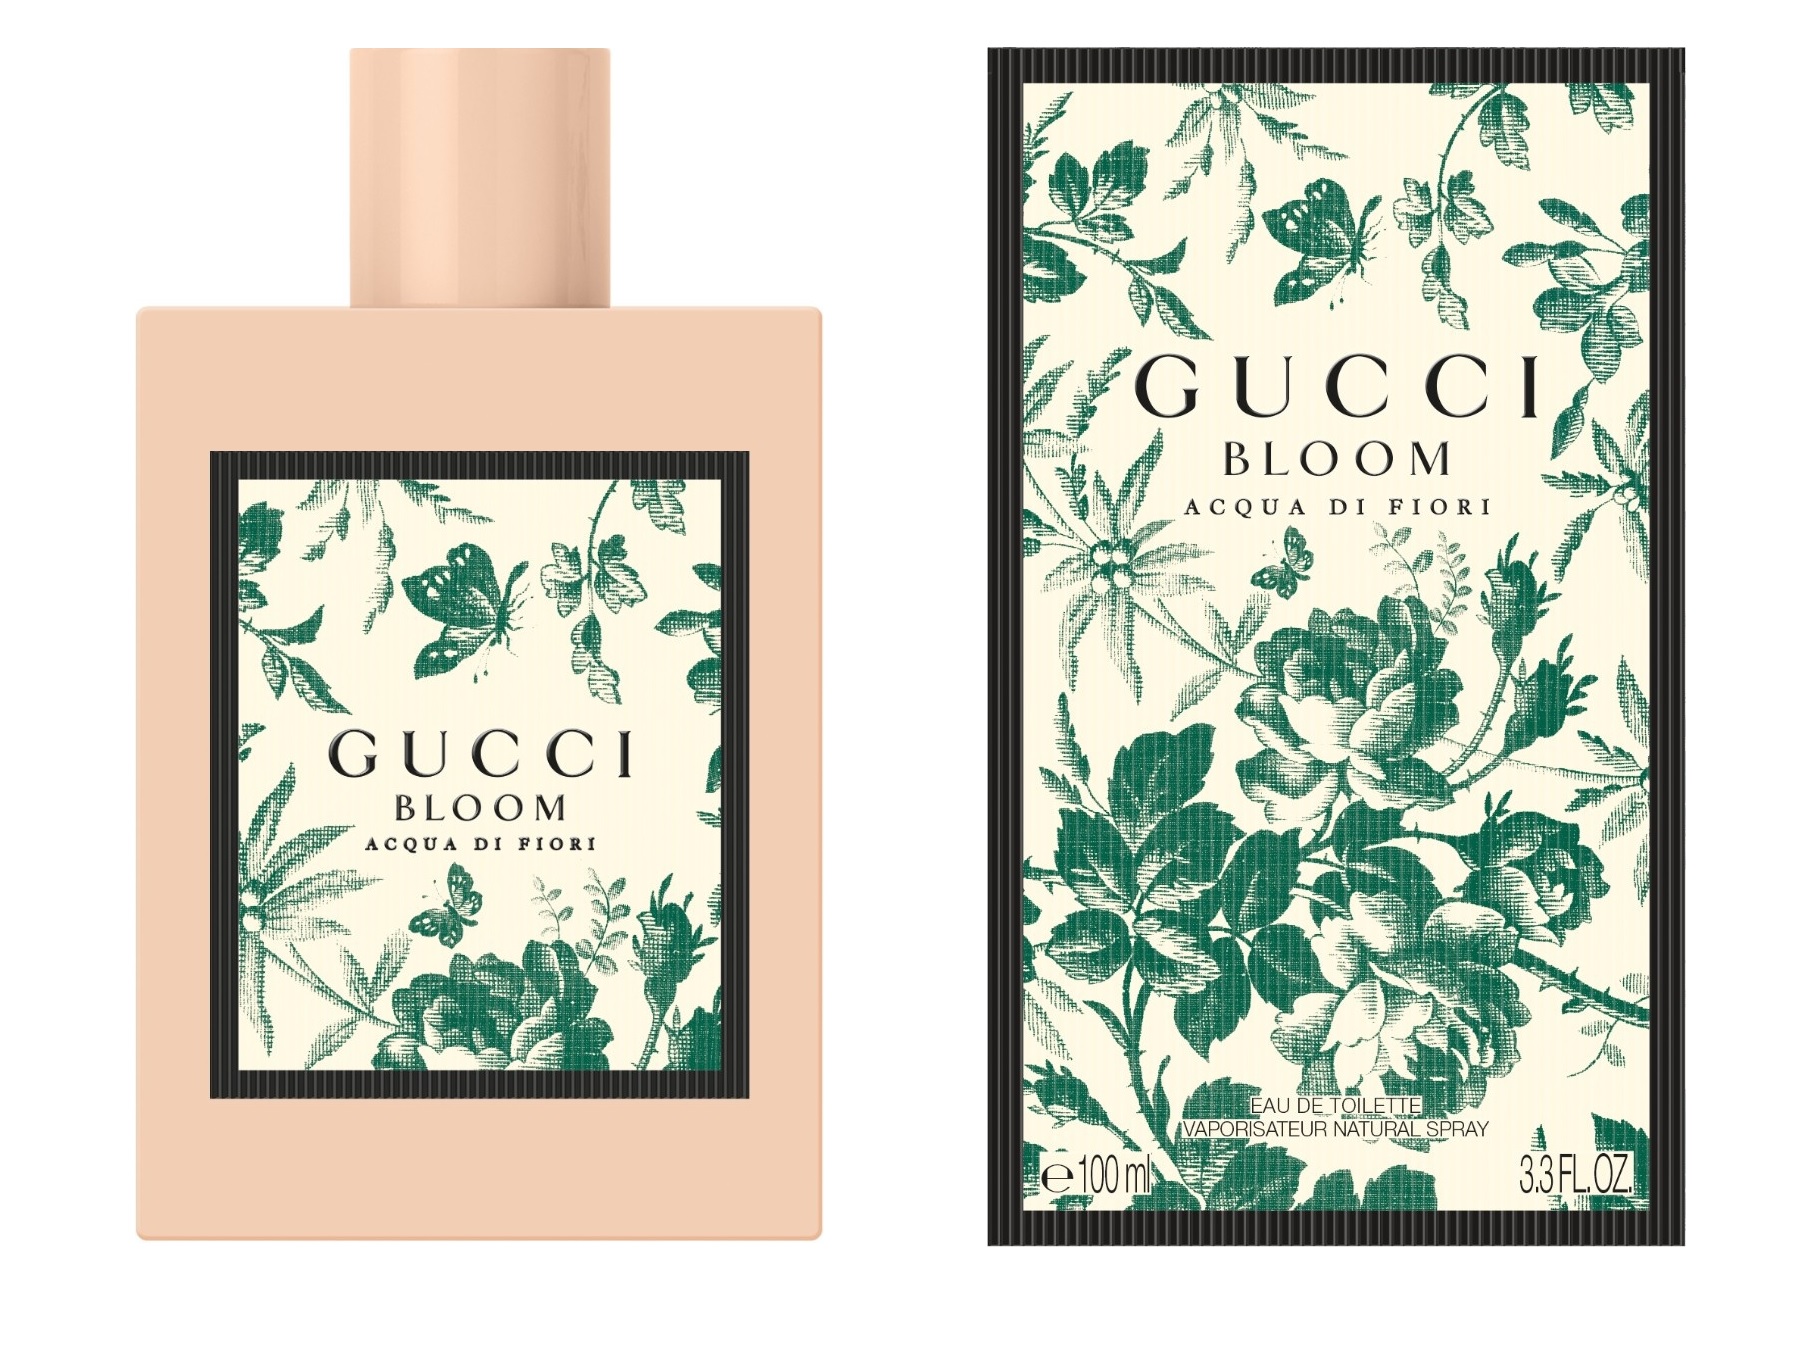 Gucci Bloom Acqua di Fiori Gucci perfume - una nuevo fragancia para